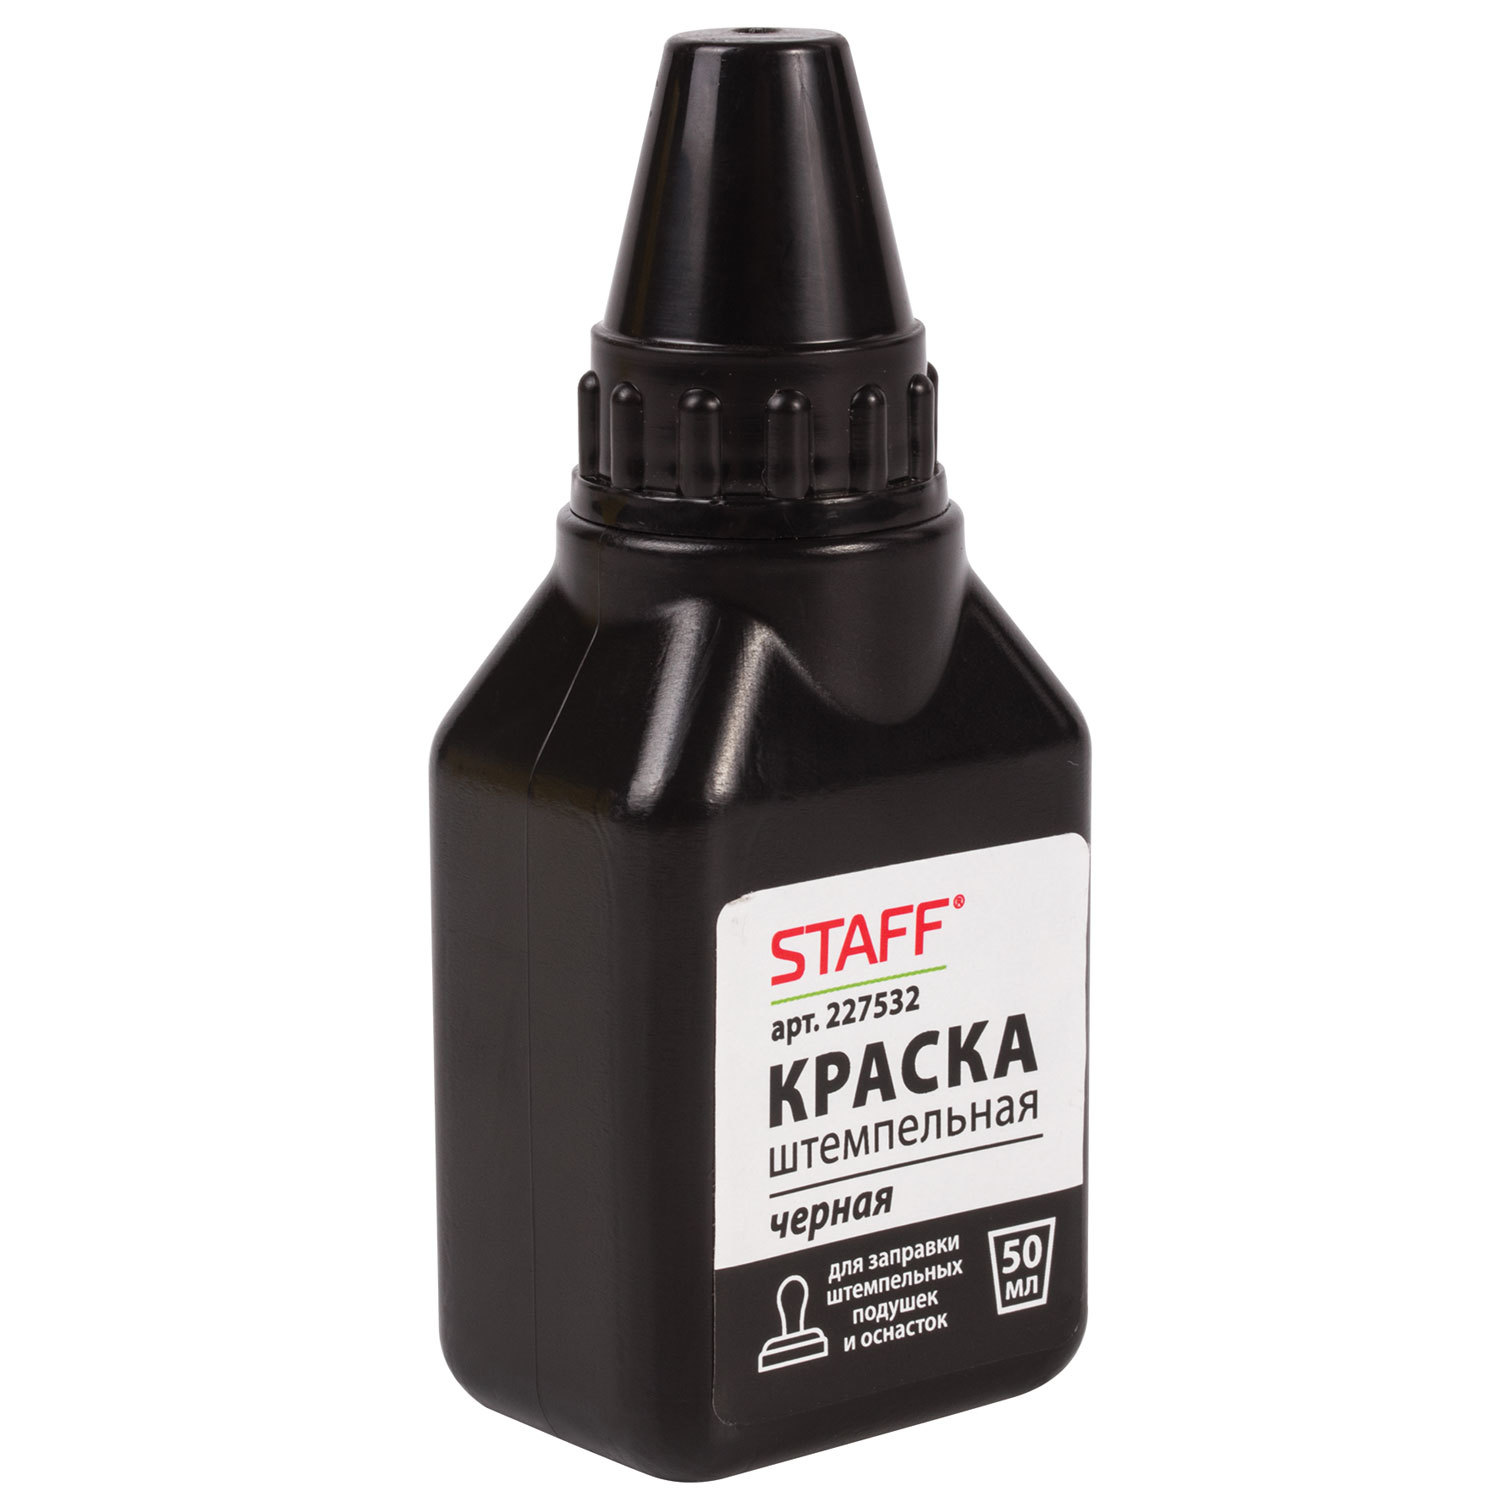 Краска штемпельная STAFF, черная, 50 мл, на водно-спиртовой основе, 227532, (12 шт.)